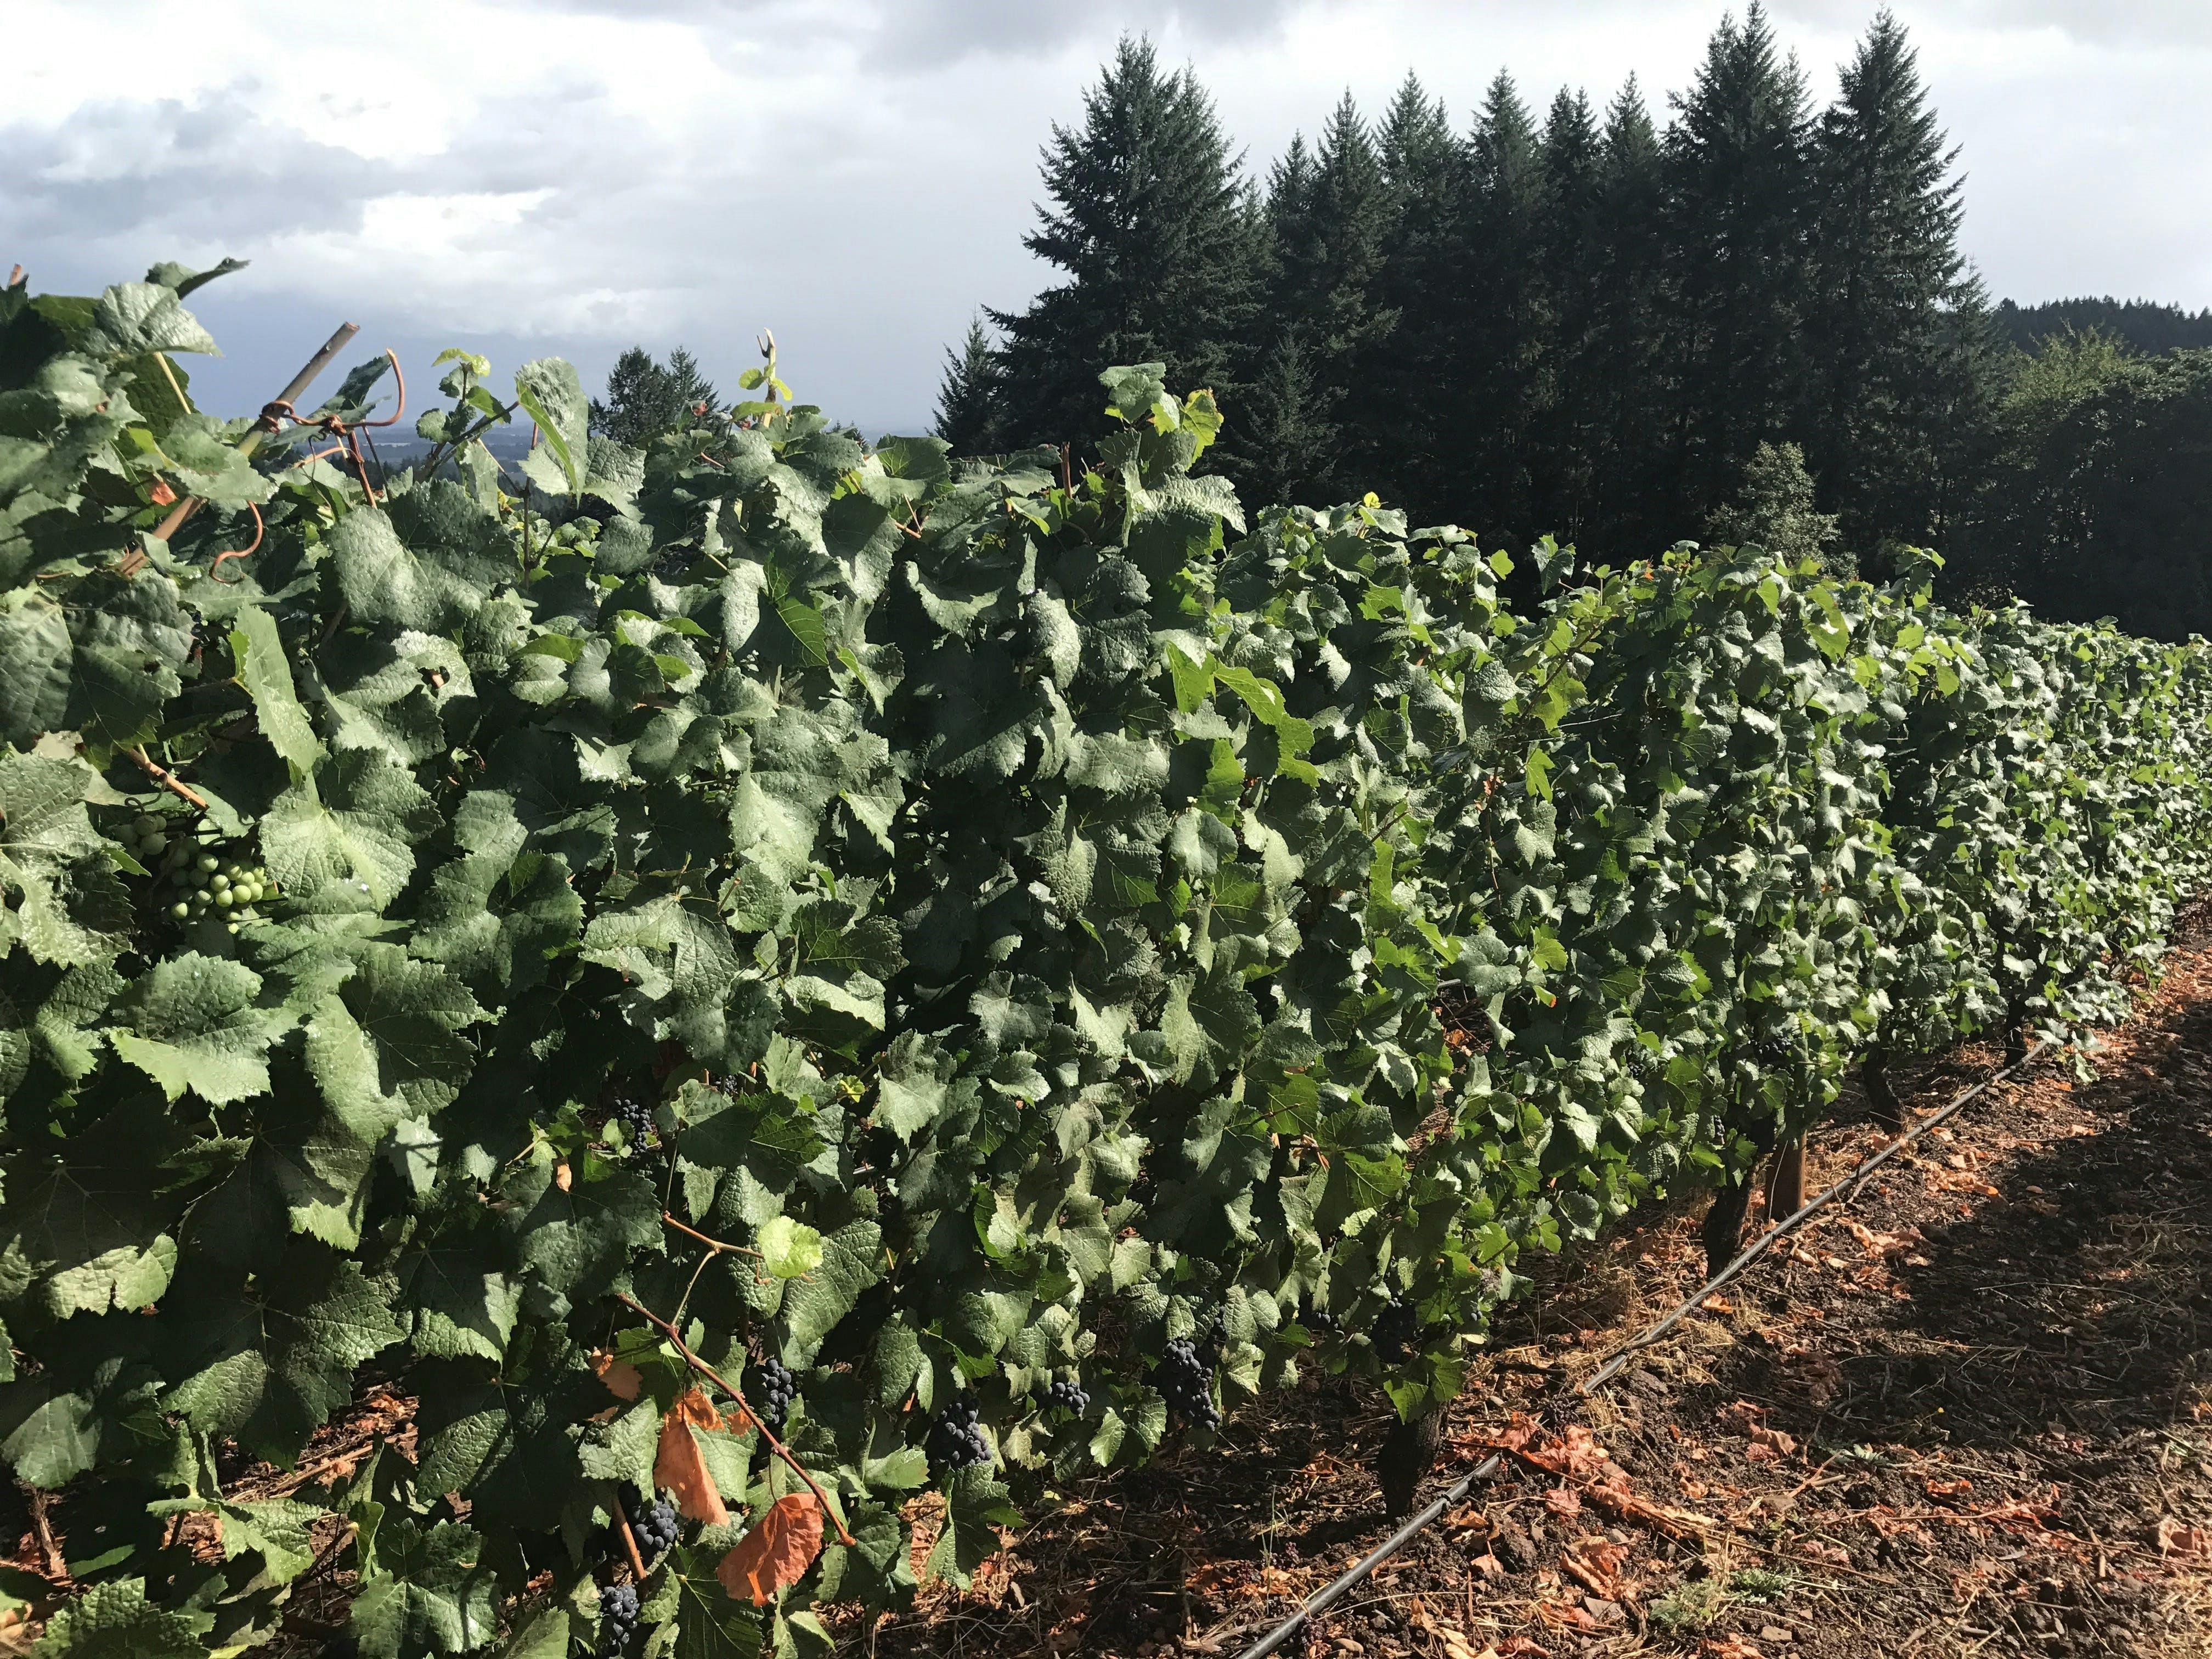 Weinprobe in Oregon